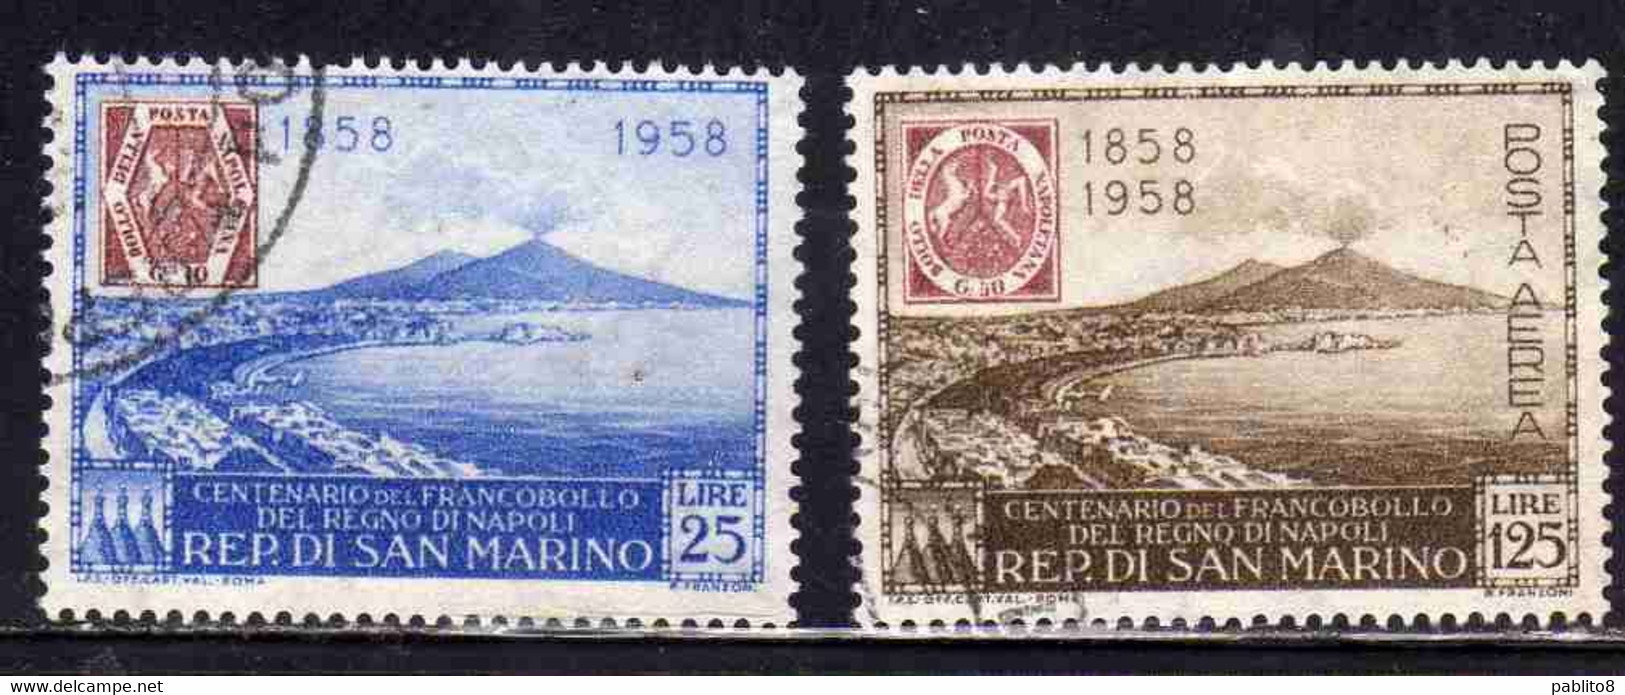 REPUBBLICA DI SAN MARINO 1958 CENTENARIO FRANCOBOLLO REGNO DI NAPOLI SERIE COMPLETA COMPLETE SET USATA USED OBLITERE' - Used Stamps